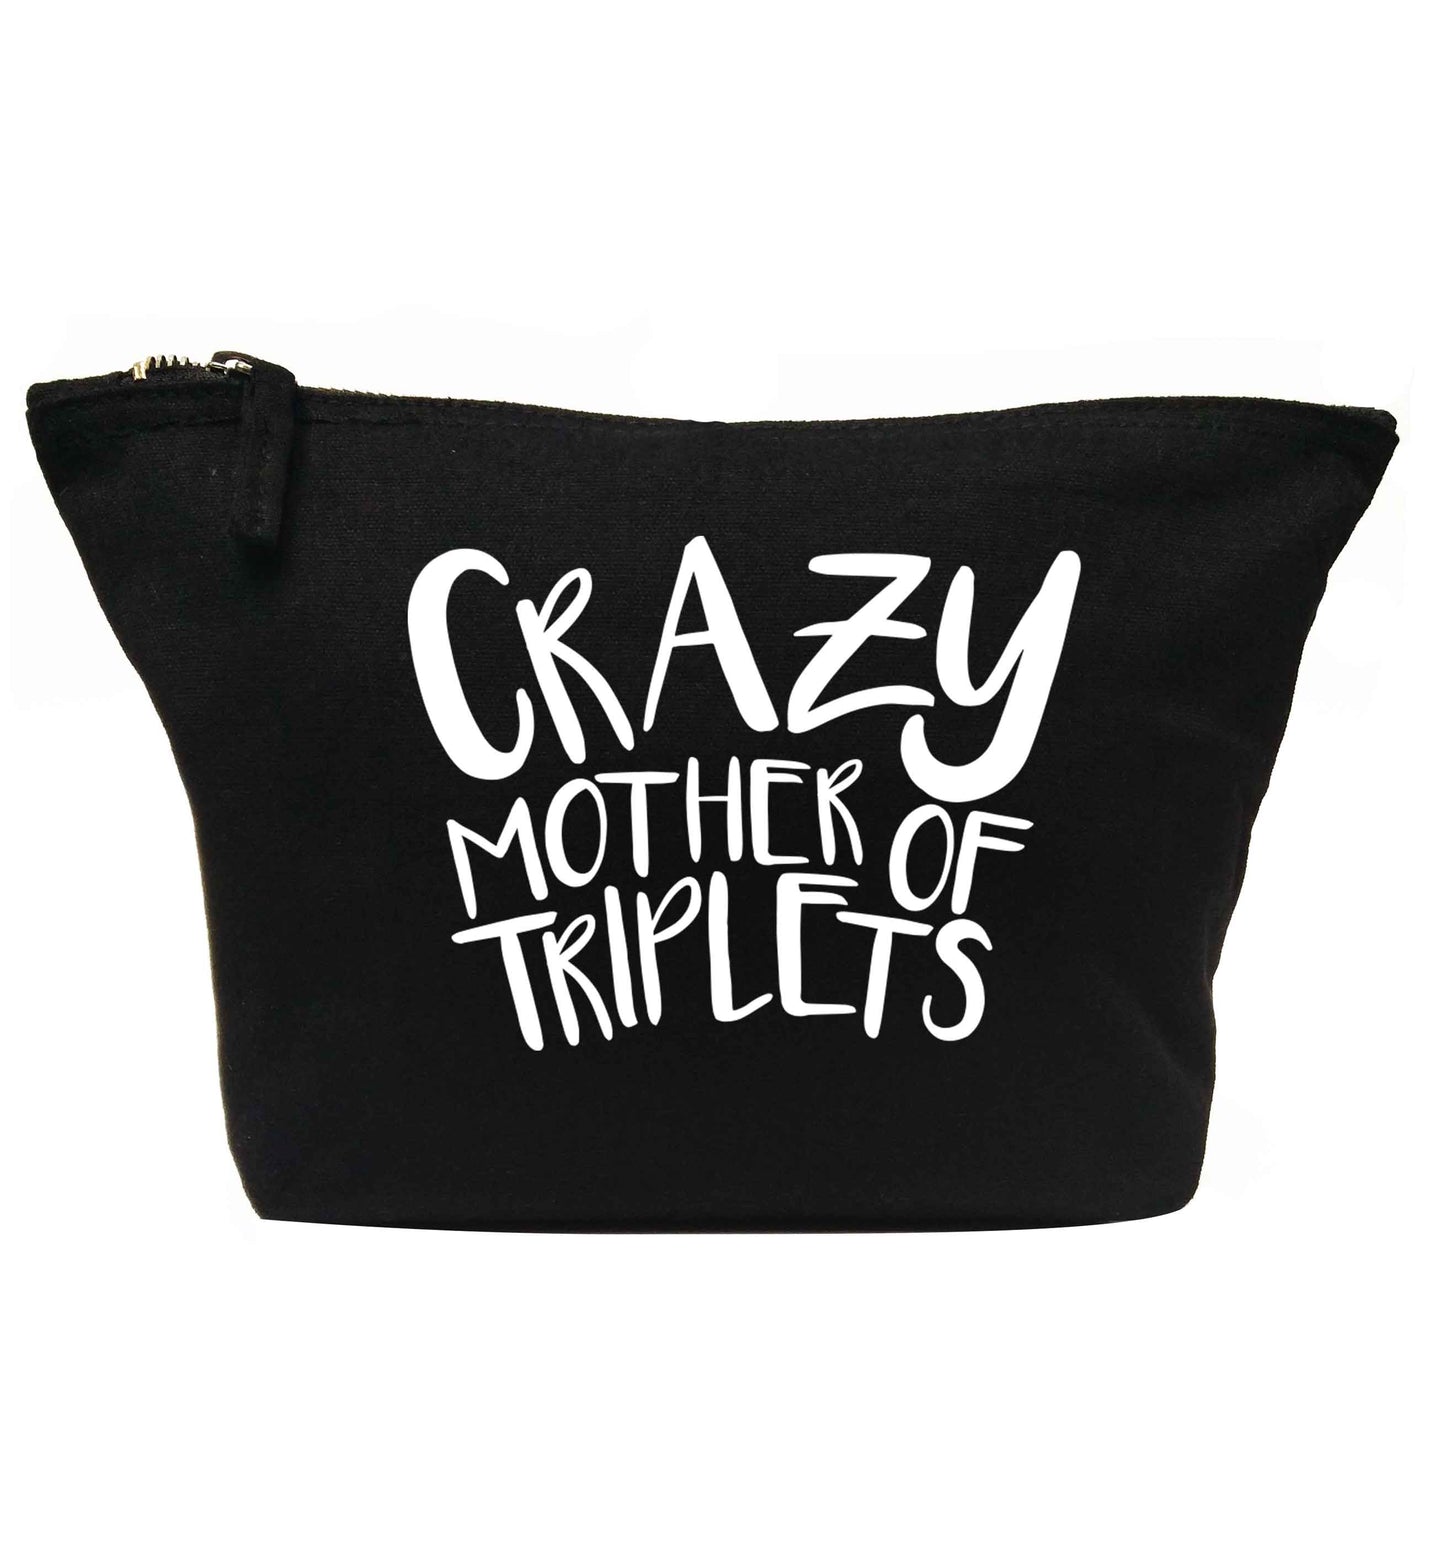 Crazy mother of triplets | Makeup / wash bag